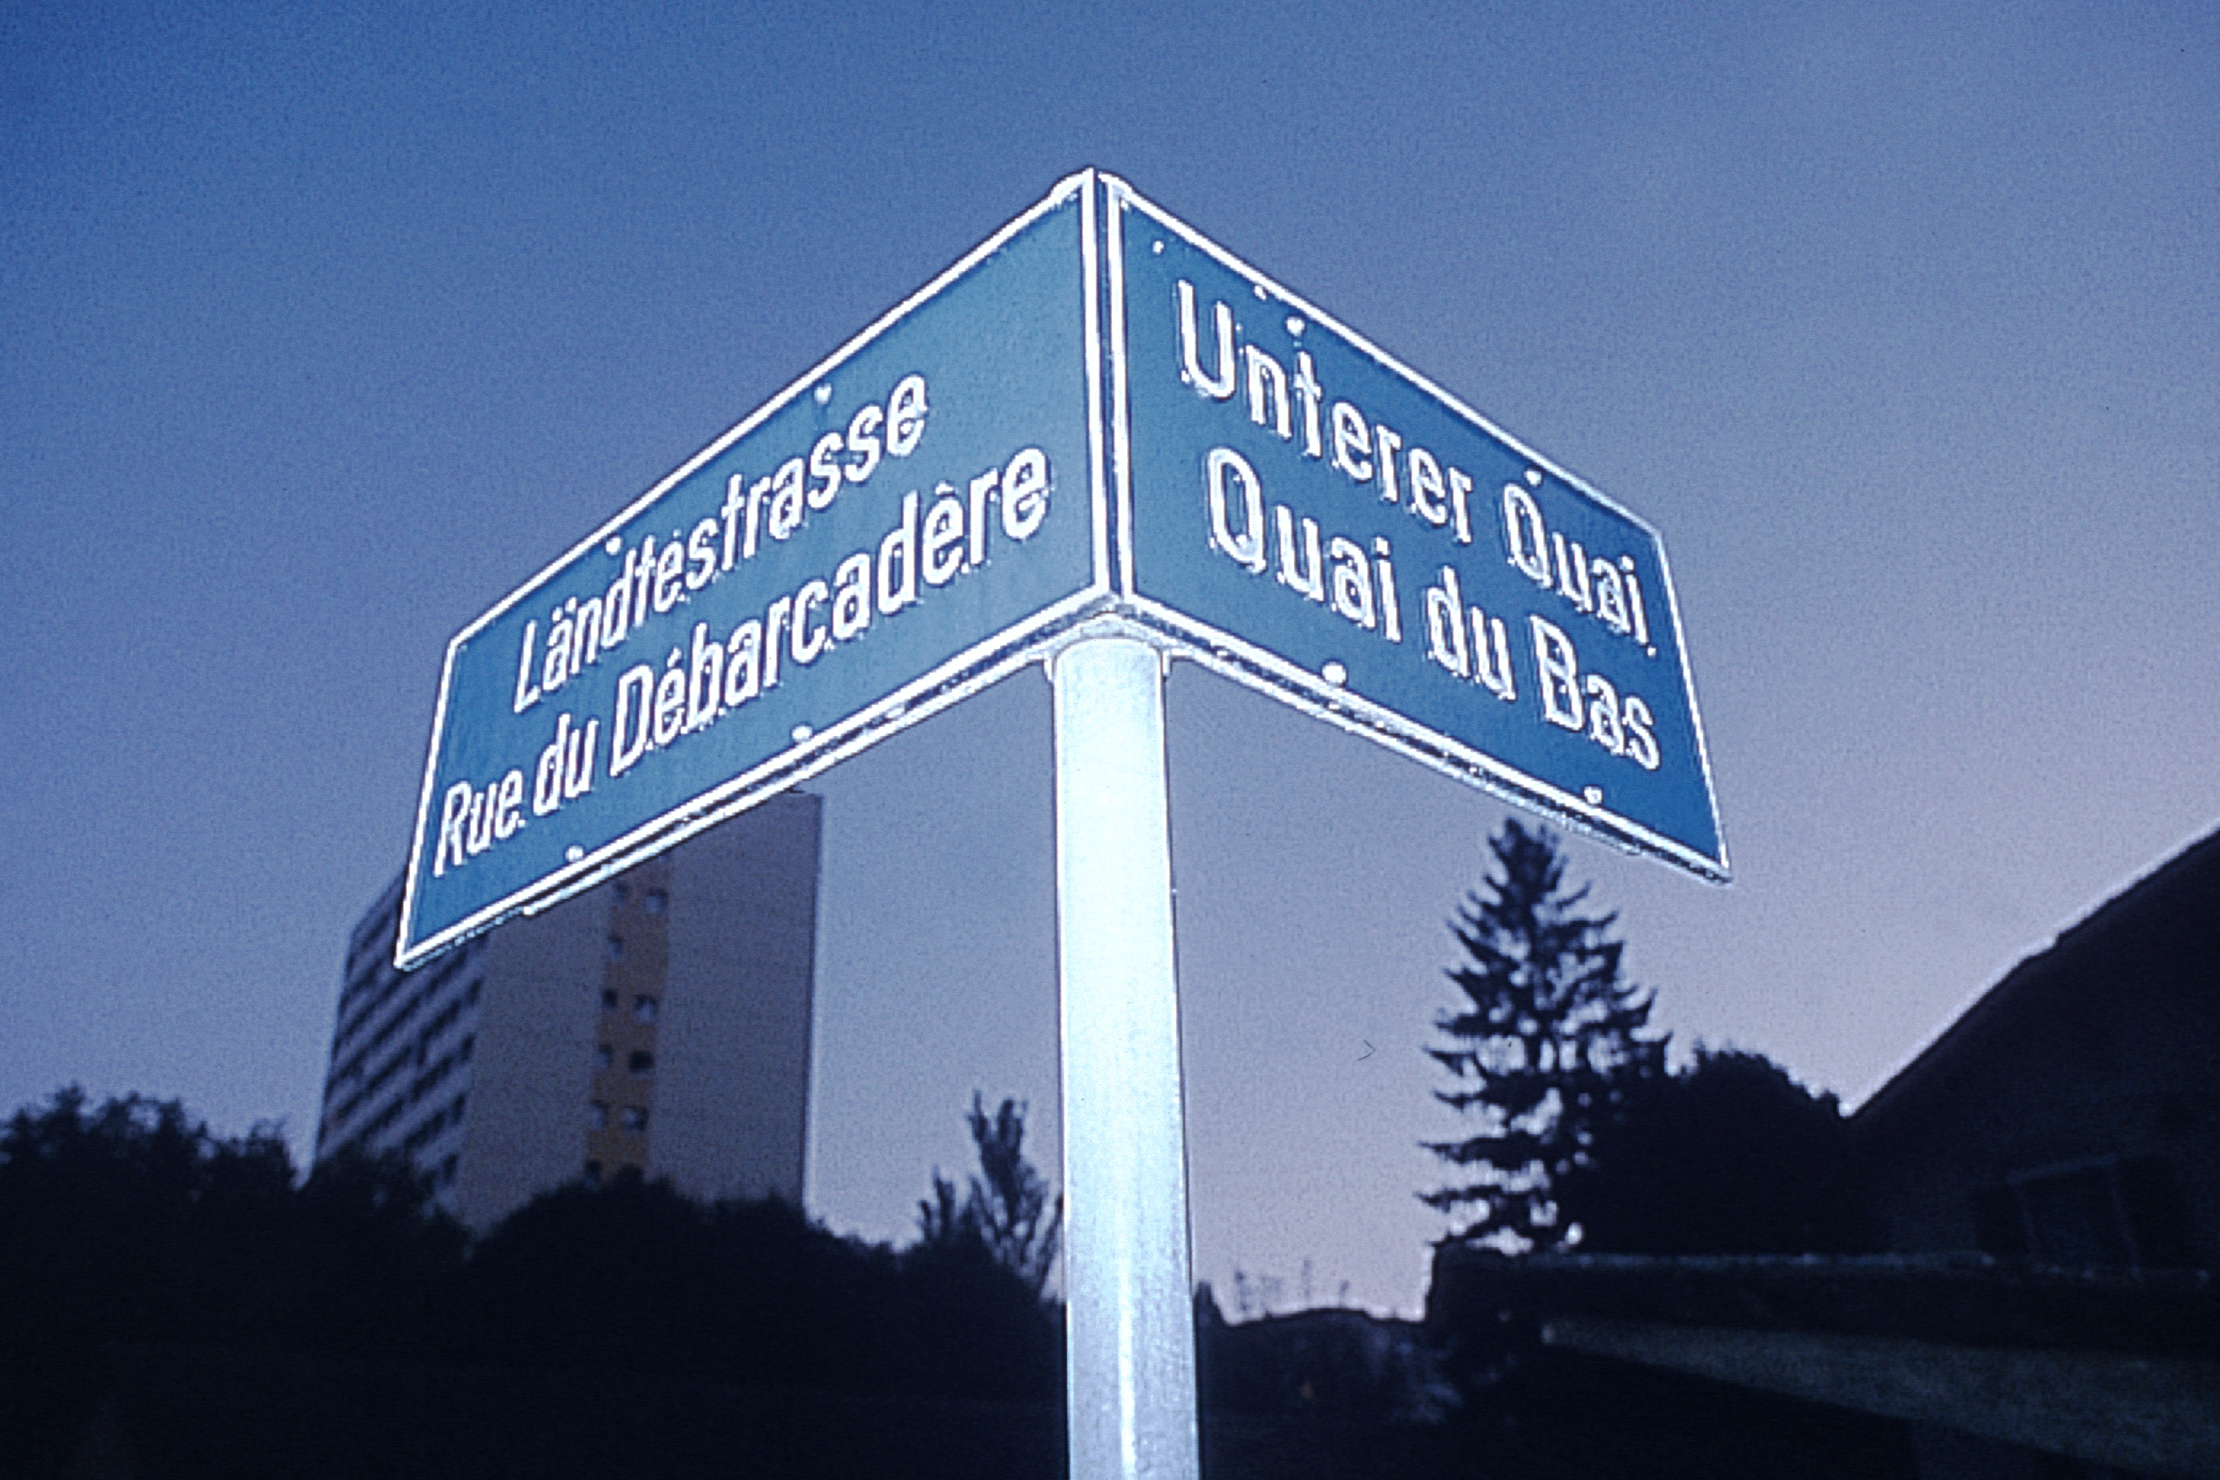 Bilinguisme – Biel/Bienne, la plus grande ville bilingue de Suisse © Chambre économique Biel/Bienne Seeland